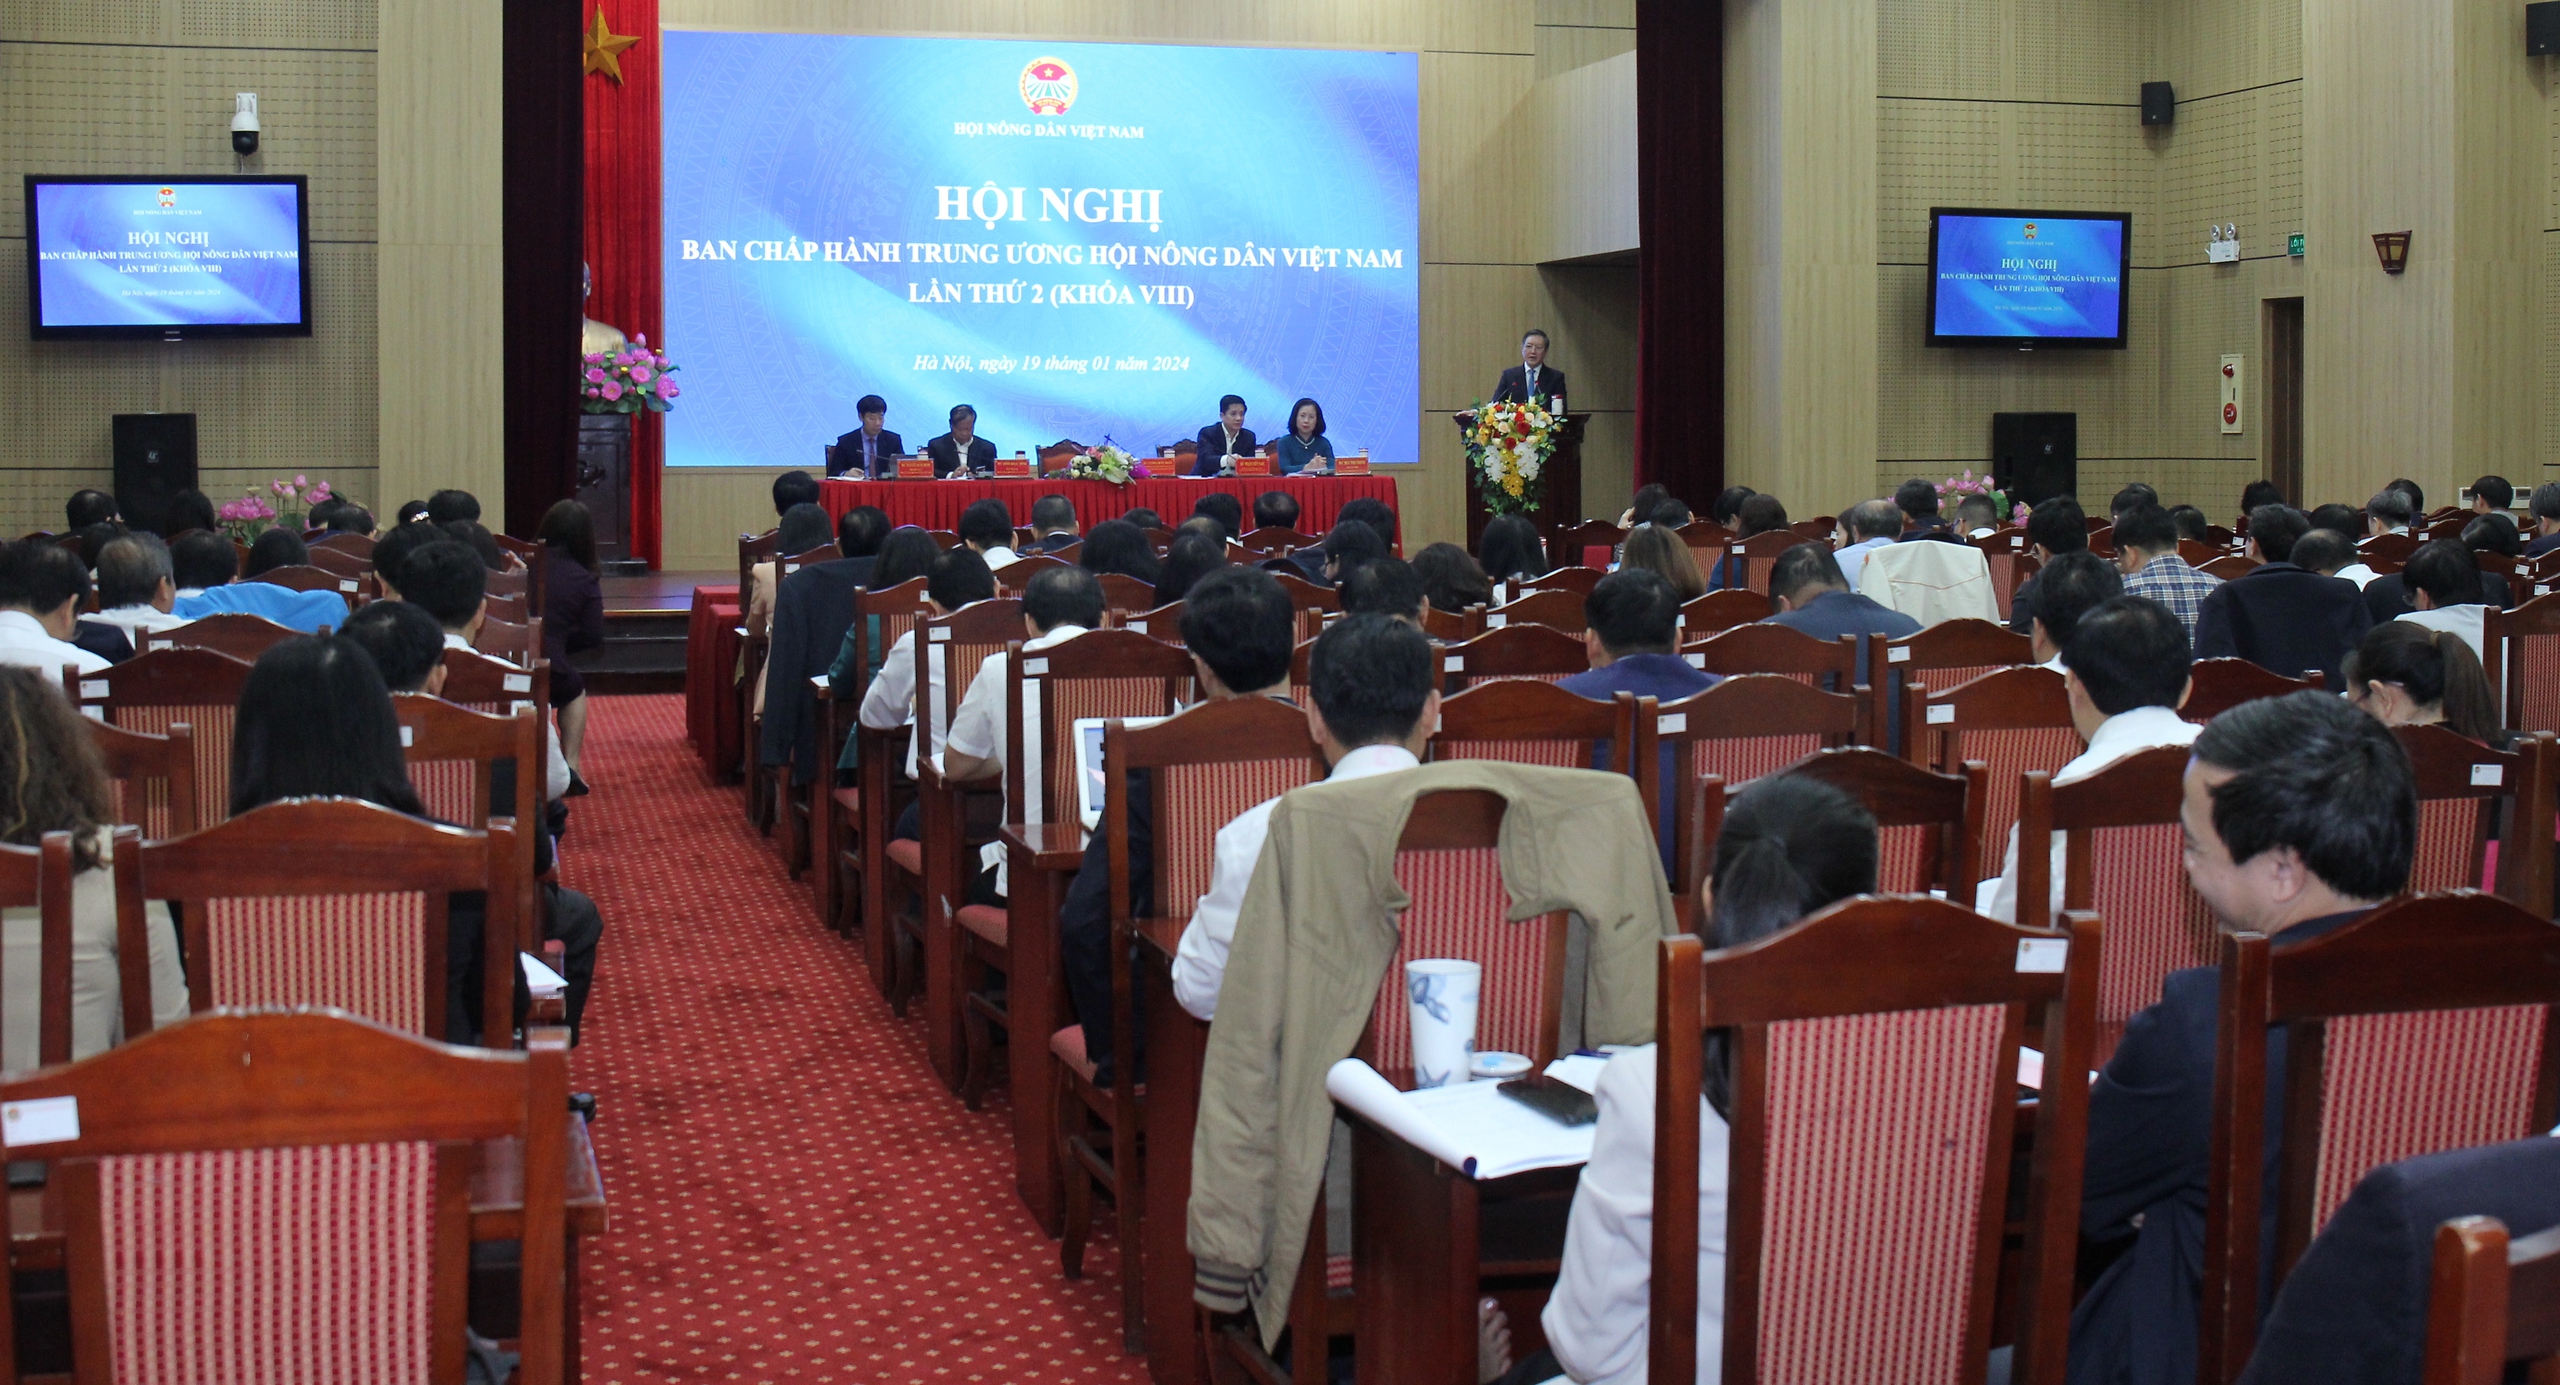 Khai mạc Hội nghị BCH Hội Nông dân Việt Nam lần thứ 2 khoá VIII: Thảo luận chương trình triển khai Nghị quyết 46-NQ/TW- Ảnh 3.